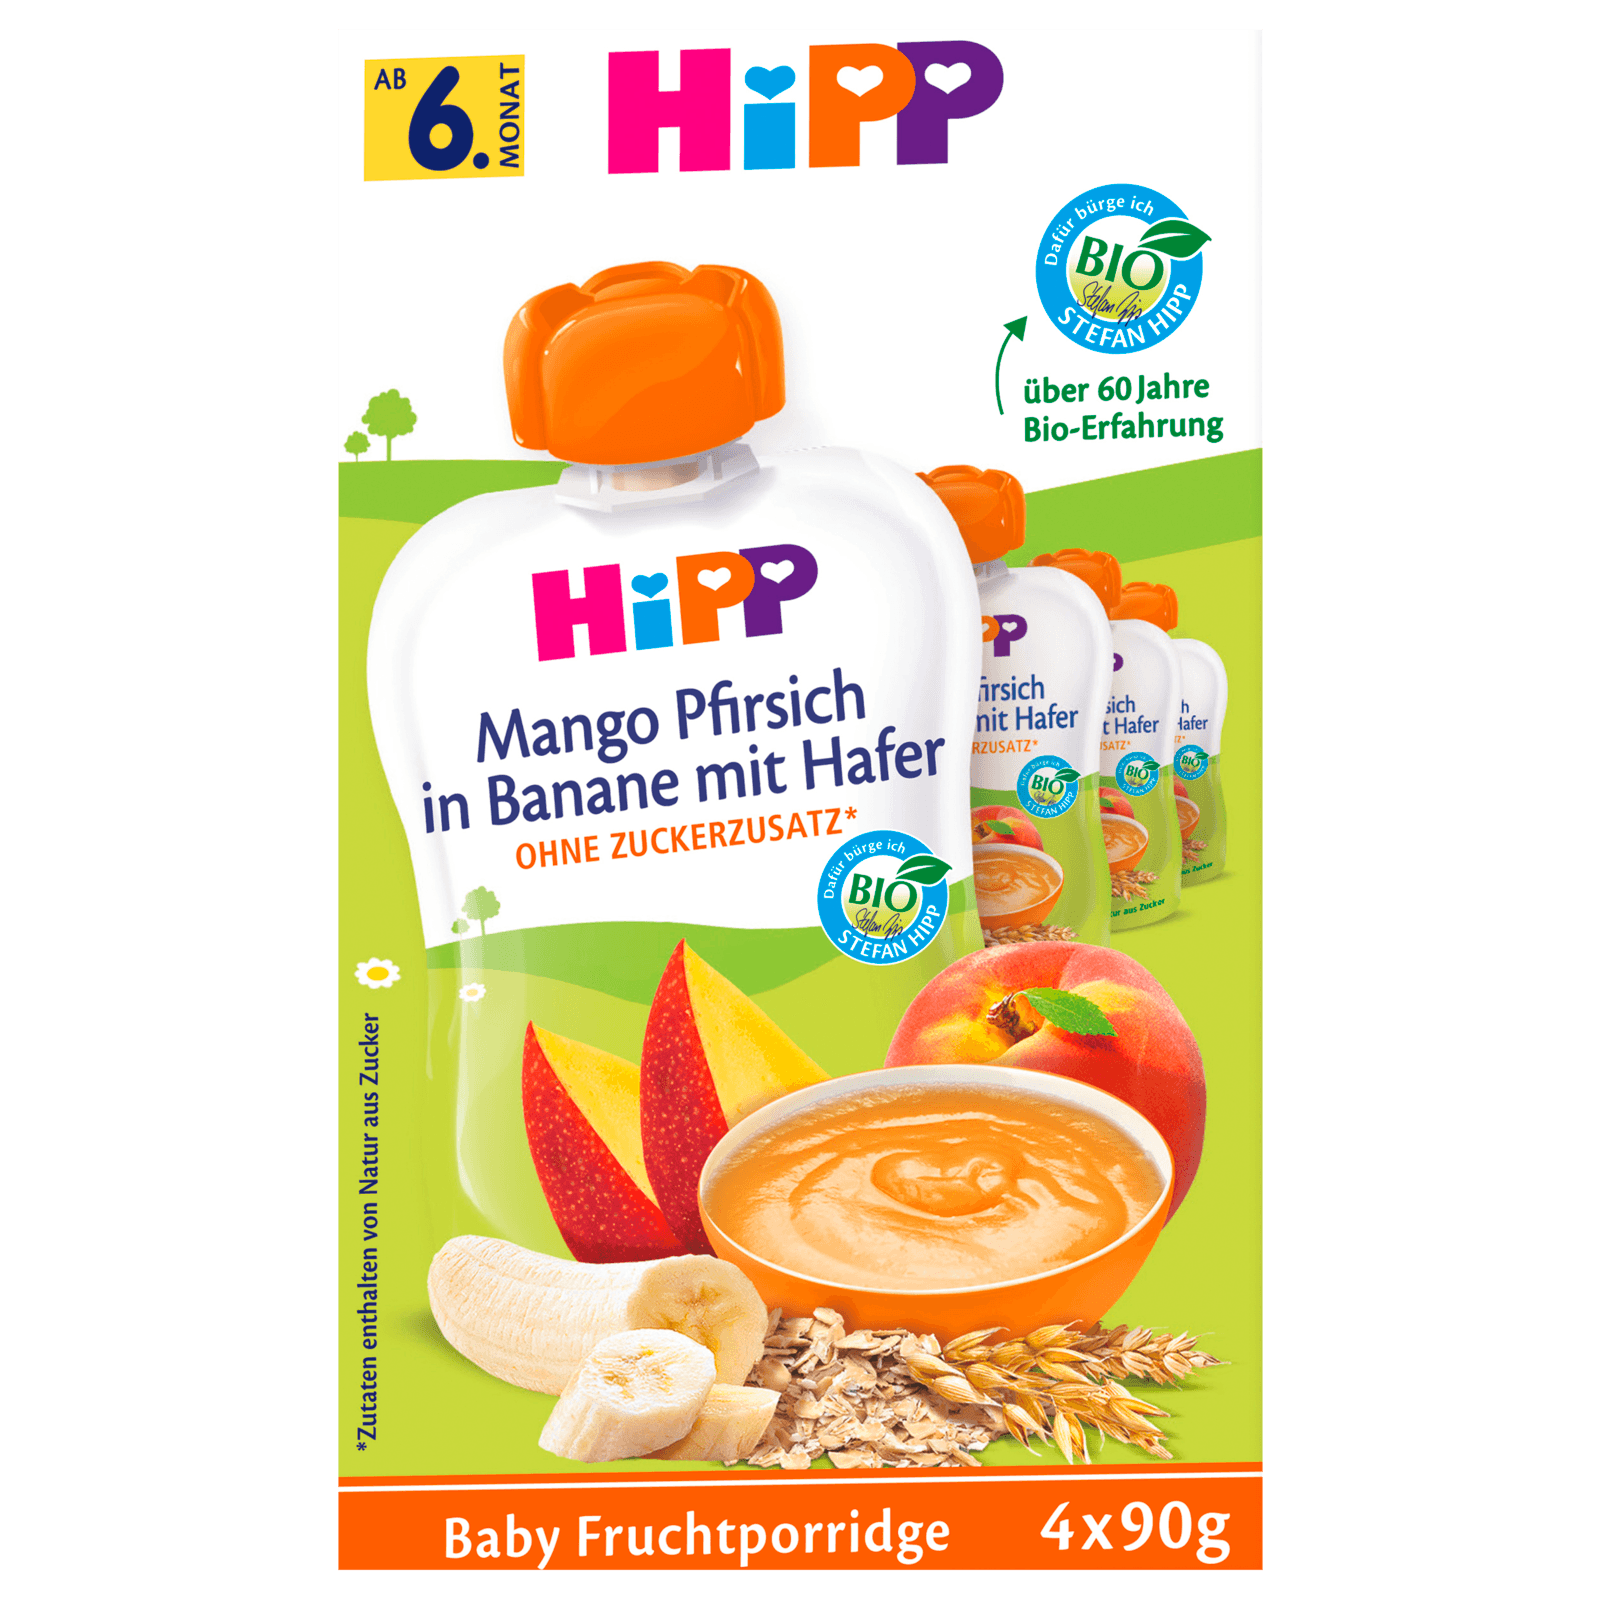 Hipp Bio Frucht-Porridge Mango-Pfirsich in Banane mit Hafer 4x90g